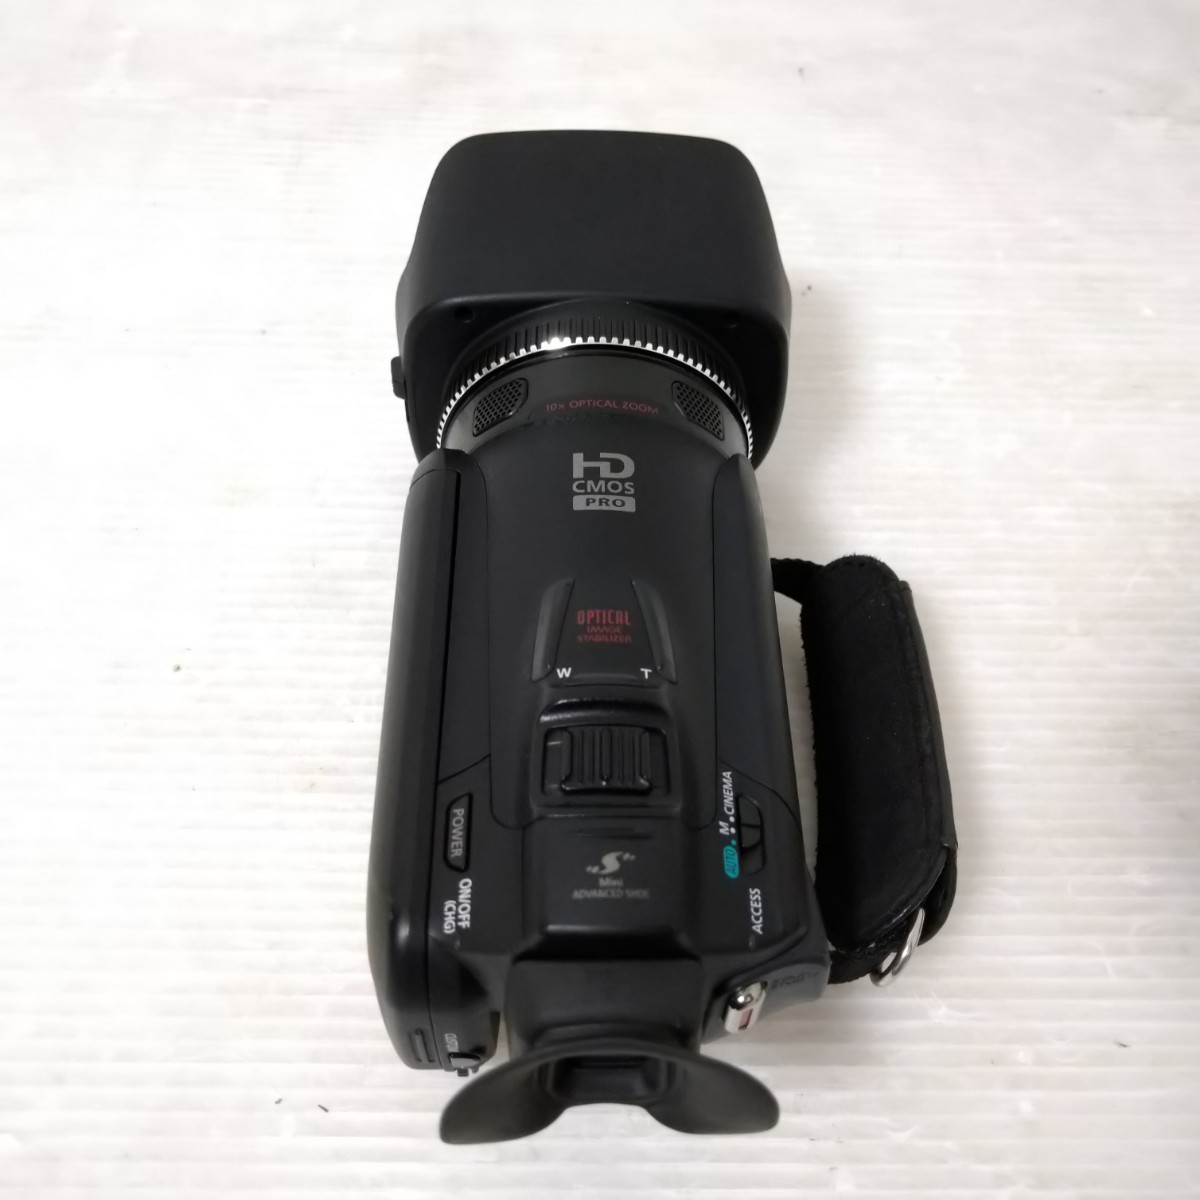 Canon iVIS HF G20 HD Video Camera キャノン HDビデオカメラ デジタル ビデオカメラ 内蔵HD32GB キヤノン デジカメ_画像6